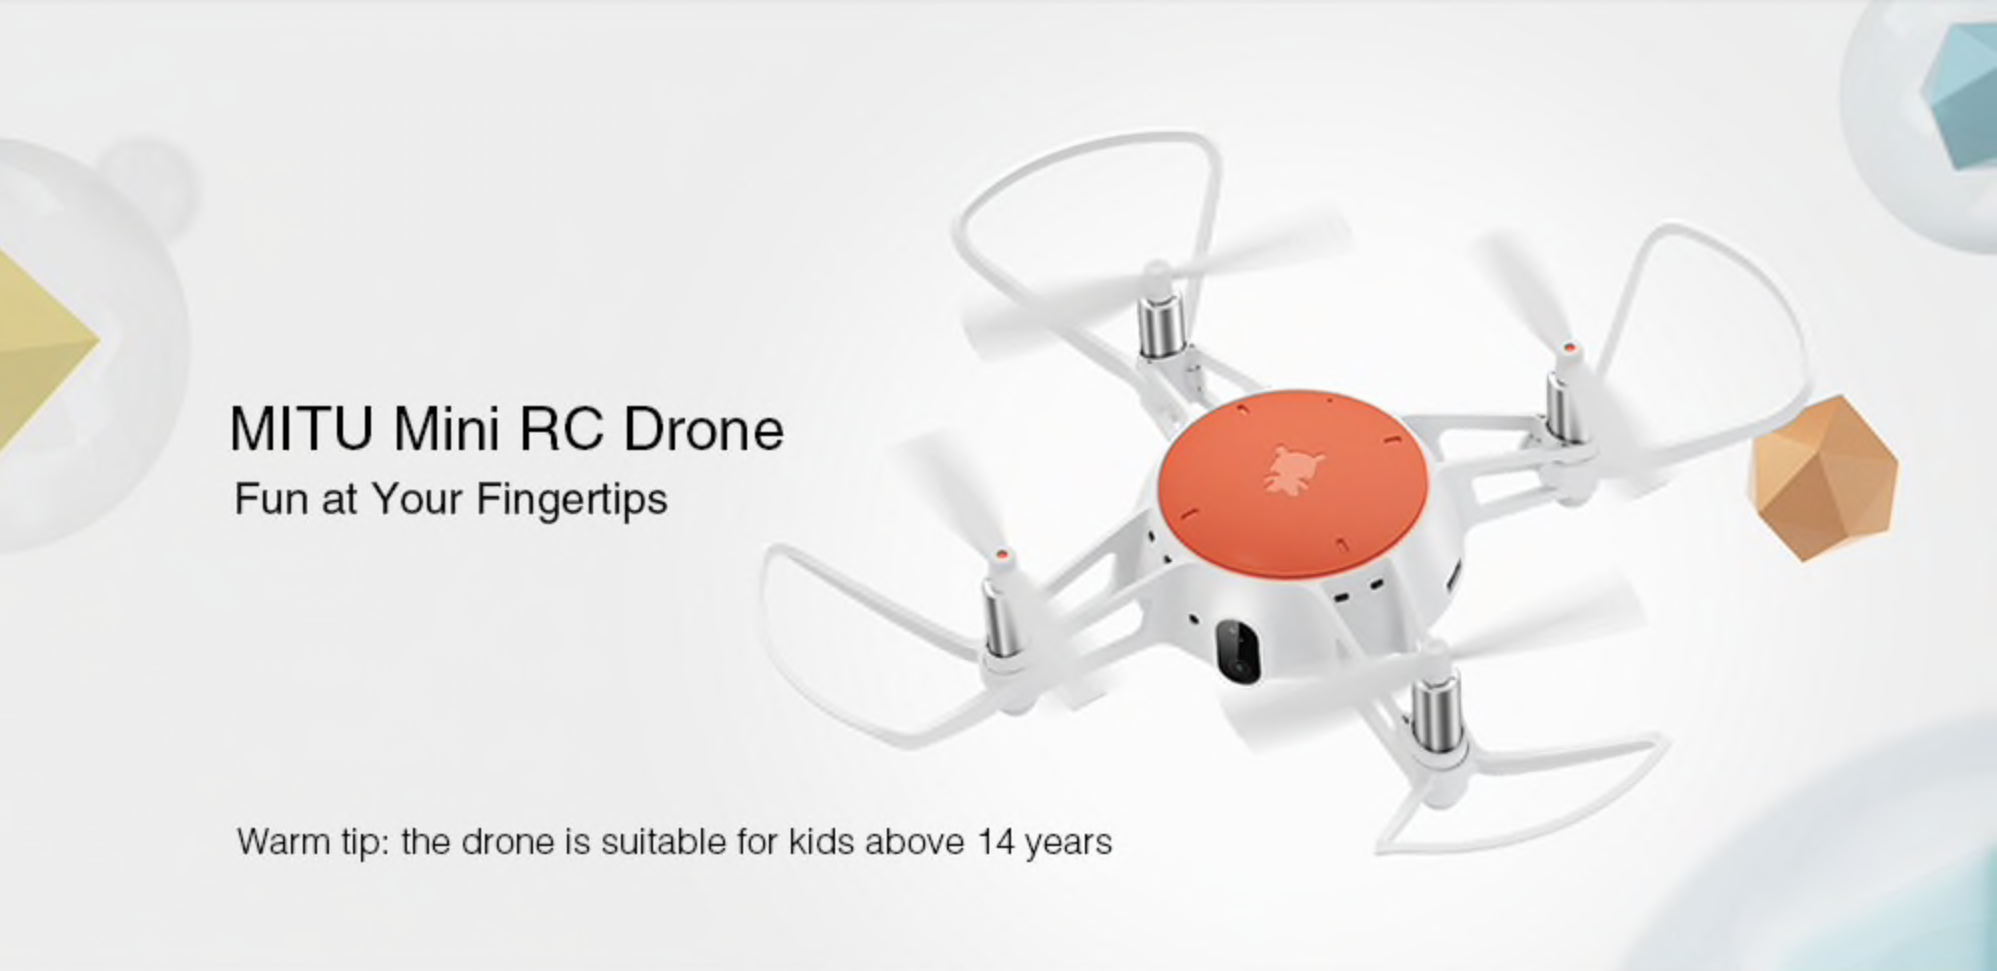 Exkluzivní dron Xiaomi MITU za nejnižší cenu v historii! [sponzorovaný článek]